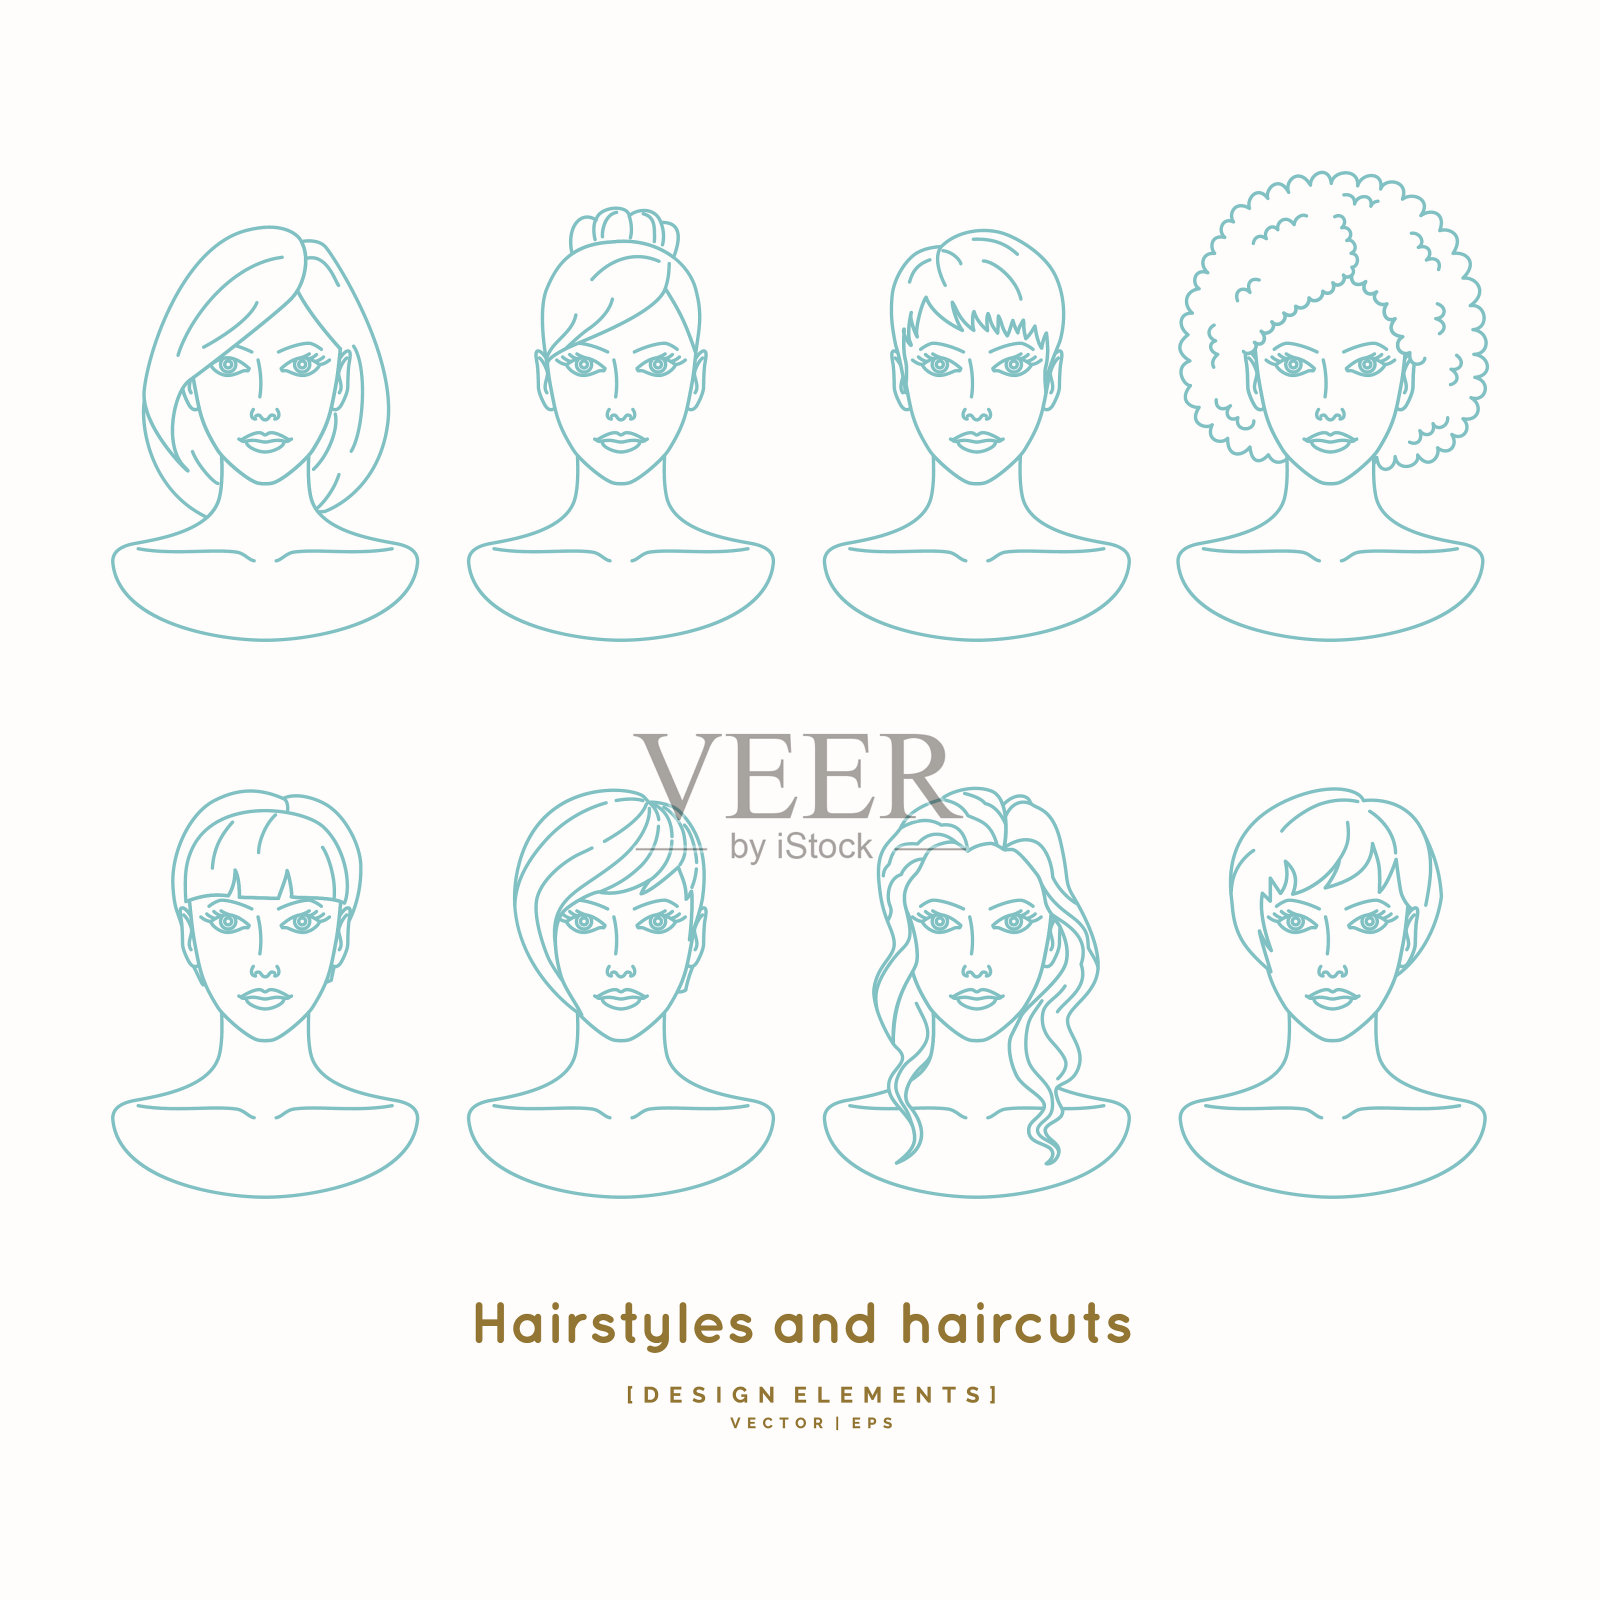 一组不同发型的女性面孔插画图片素材